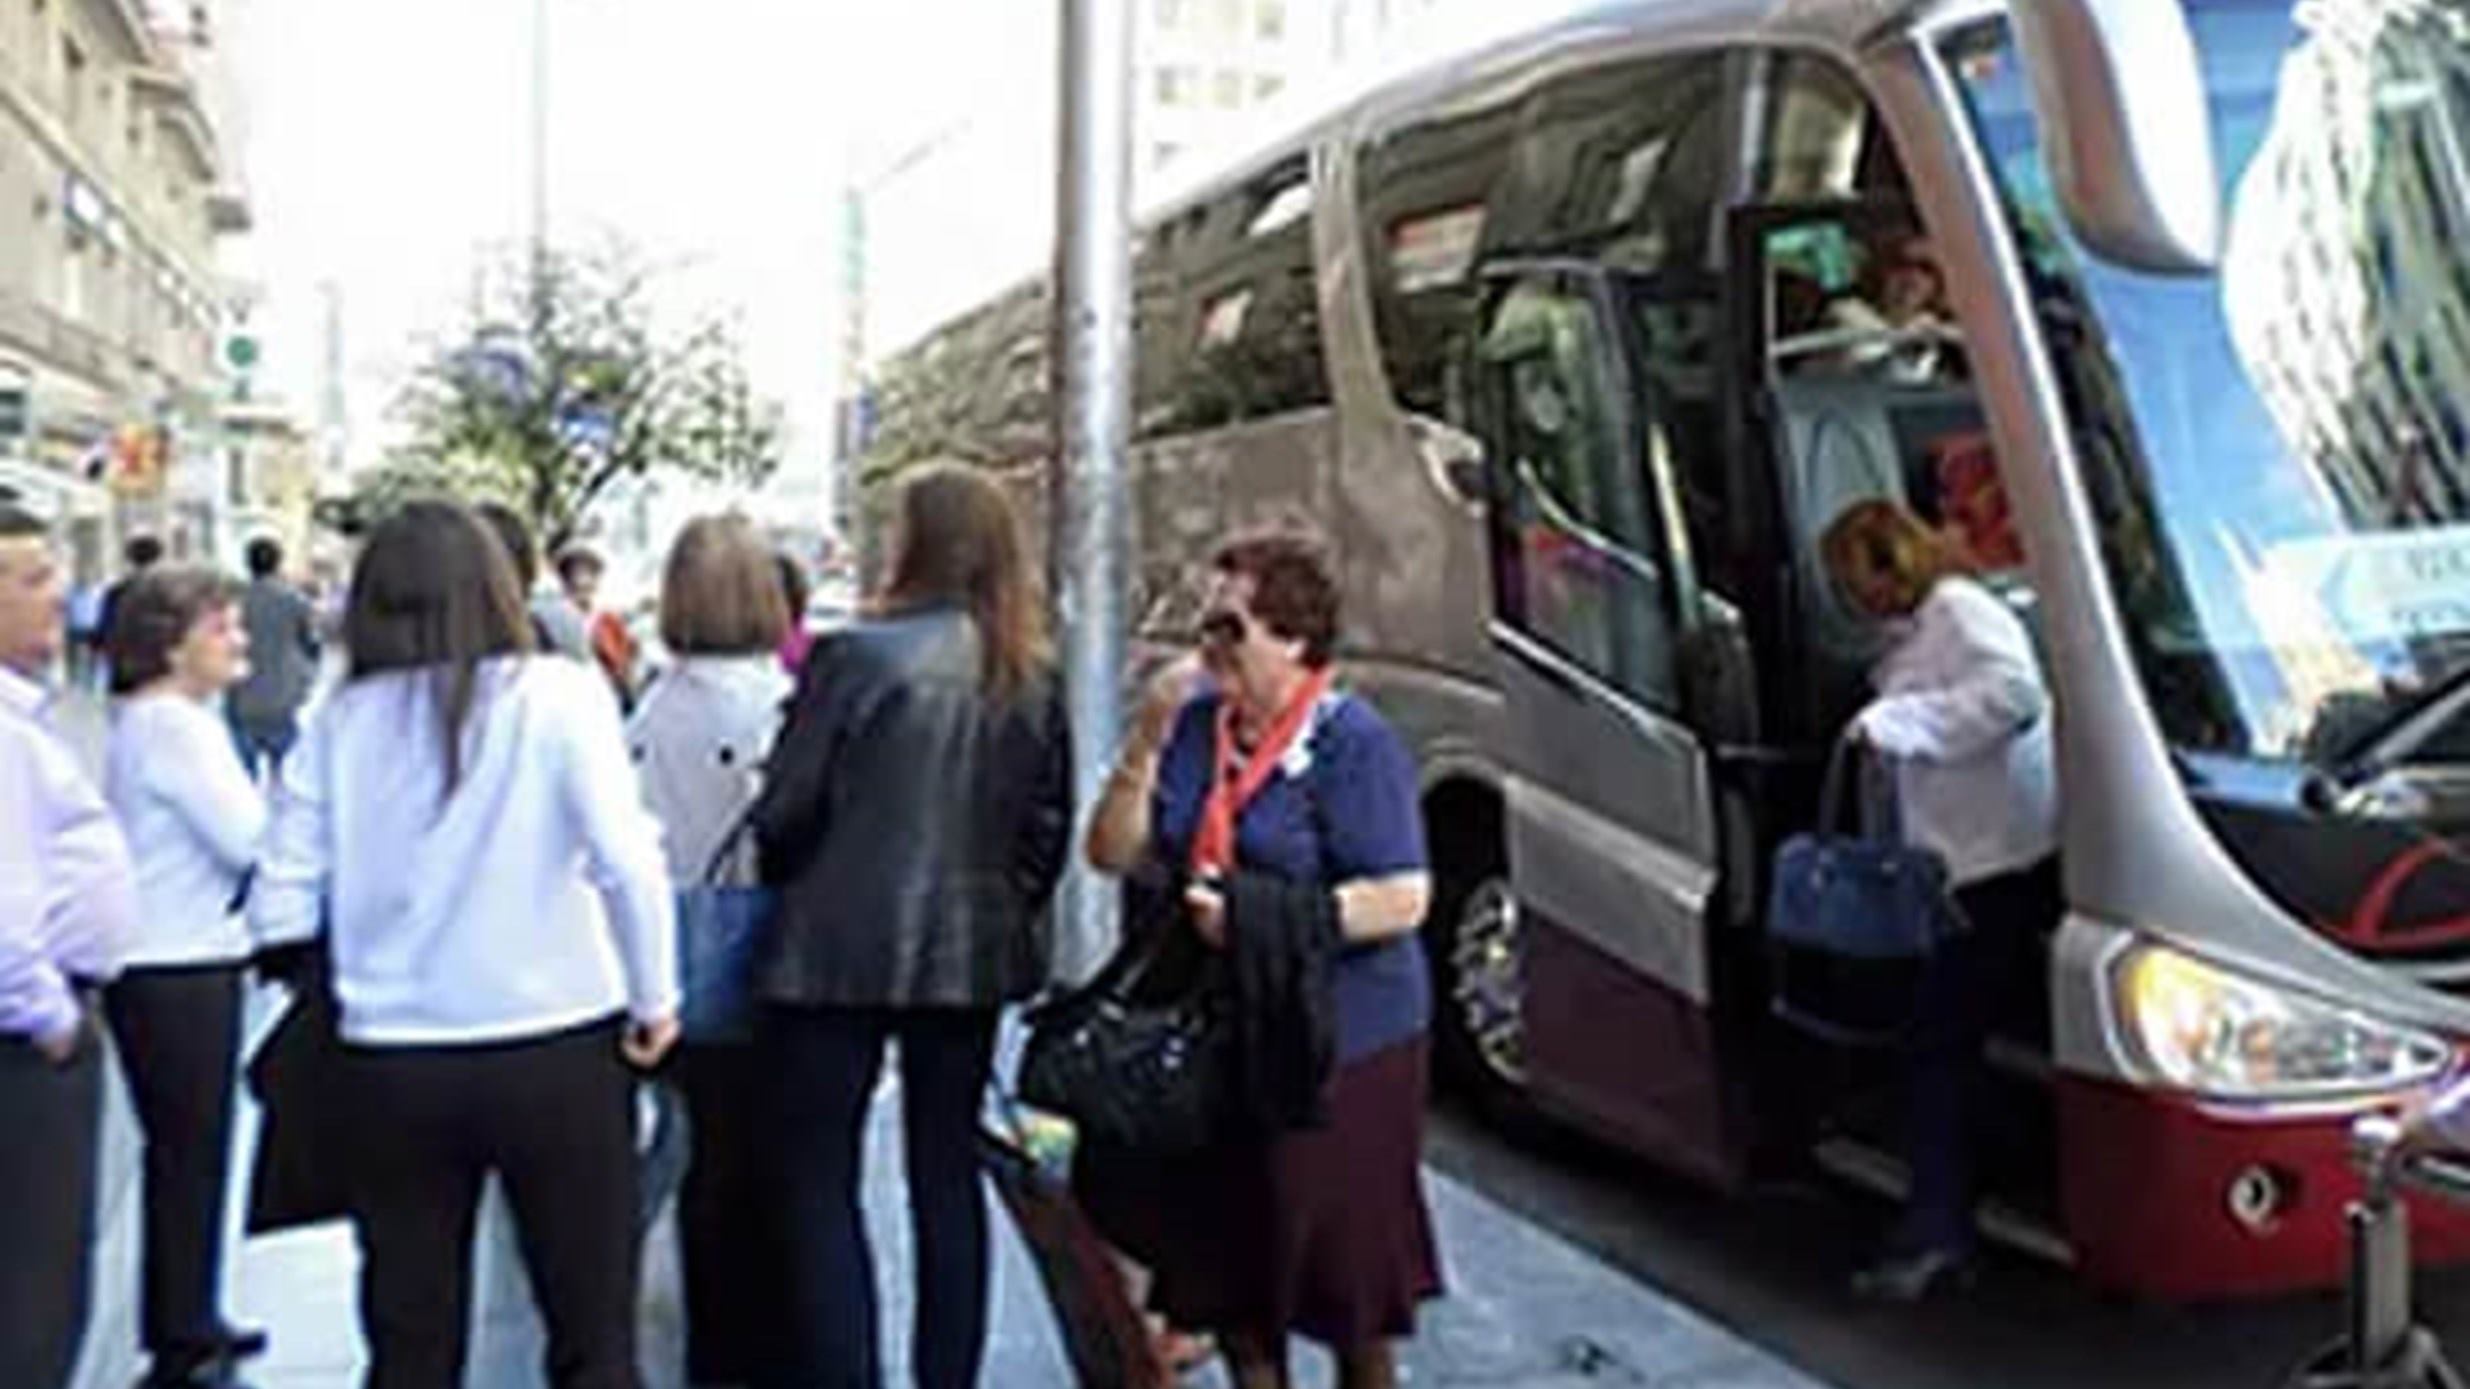 autobuses-monsalve-puertollano-excursion